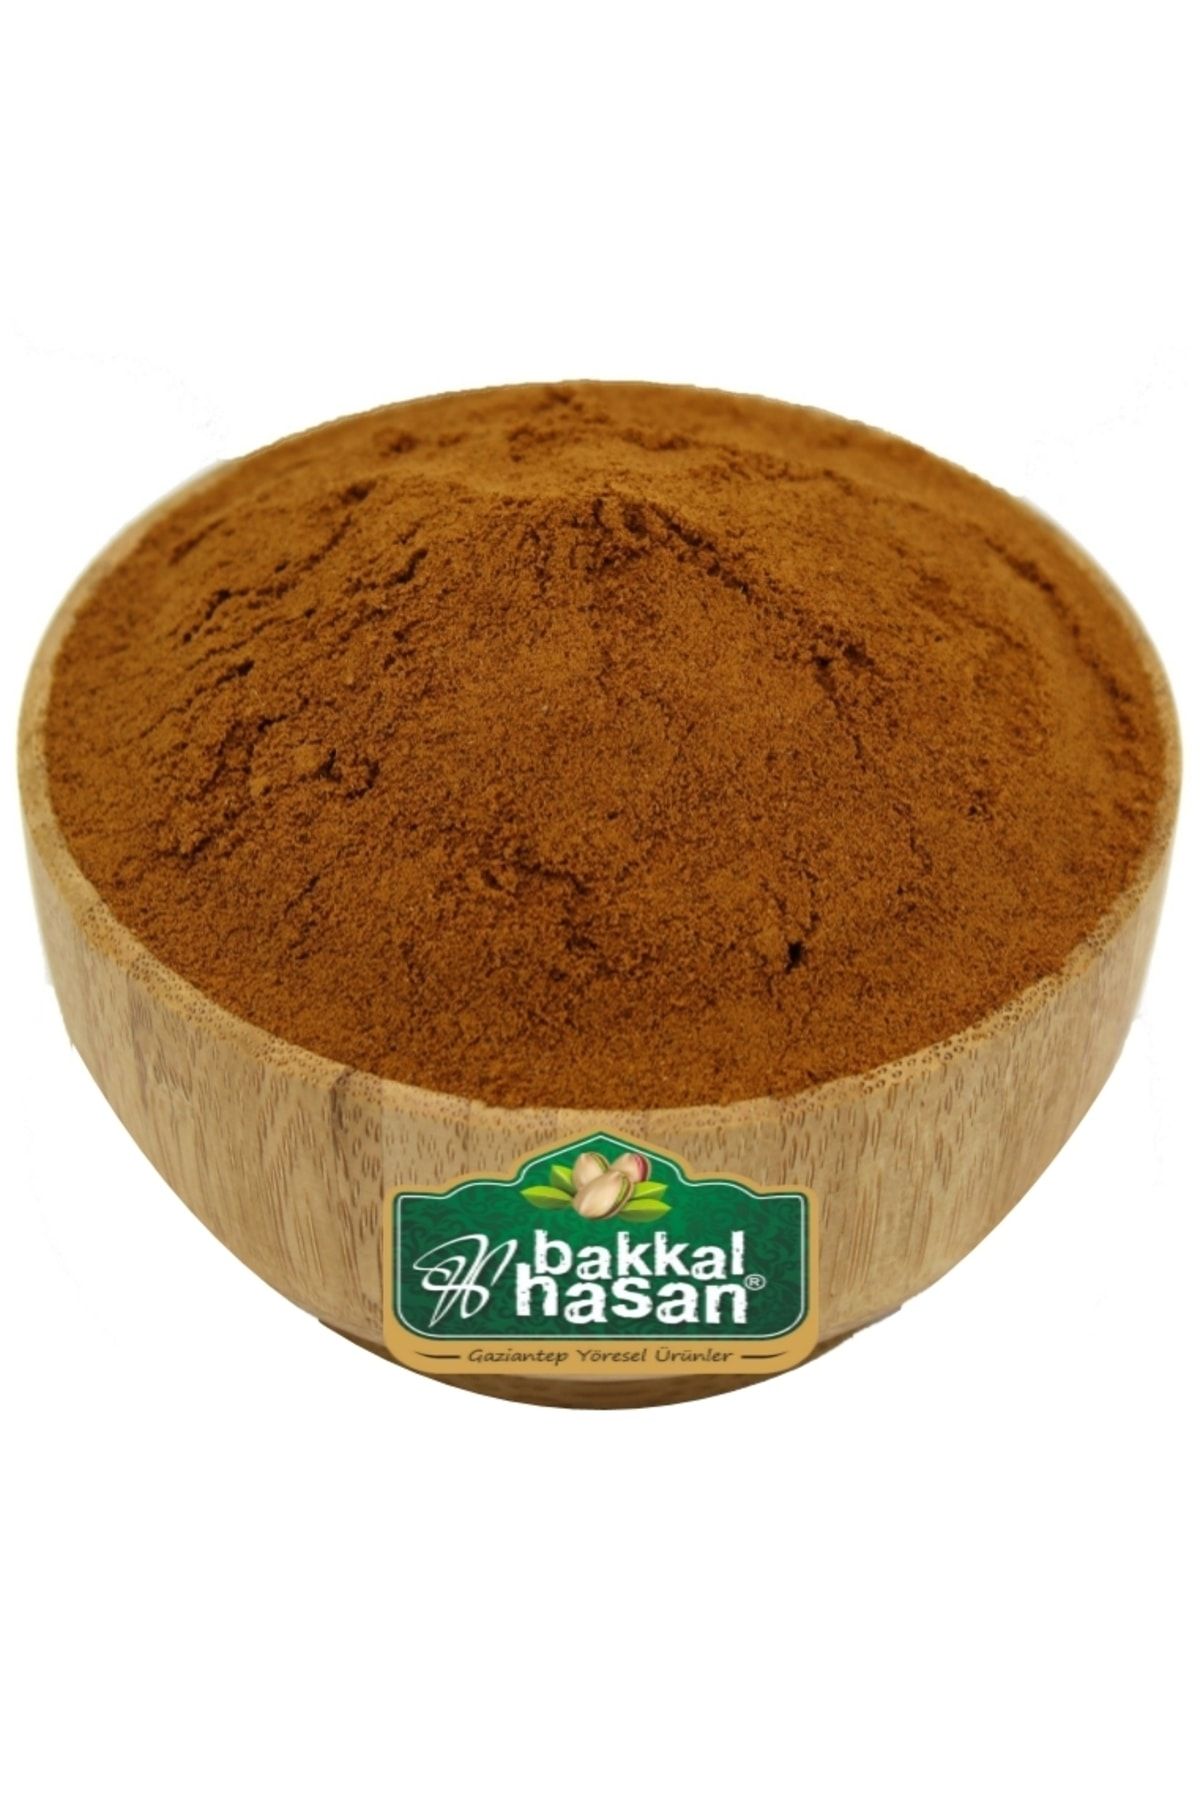 bakkal hasan Damla Sakızlı Toz Kahve 2 kg - Bakkal Hasan